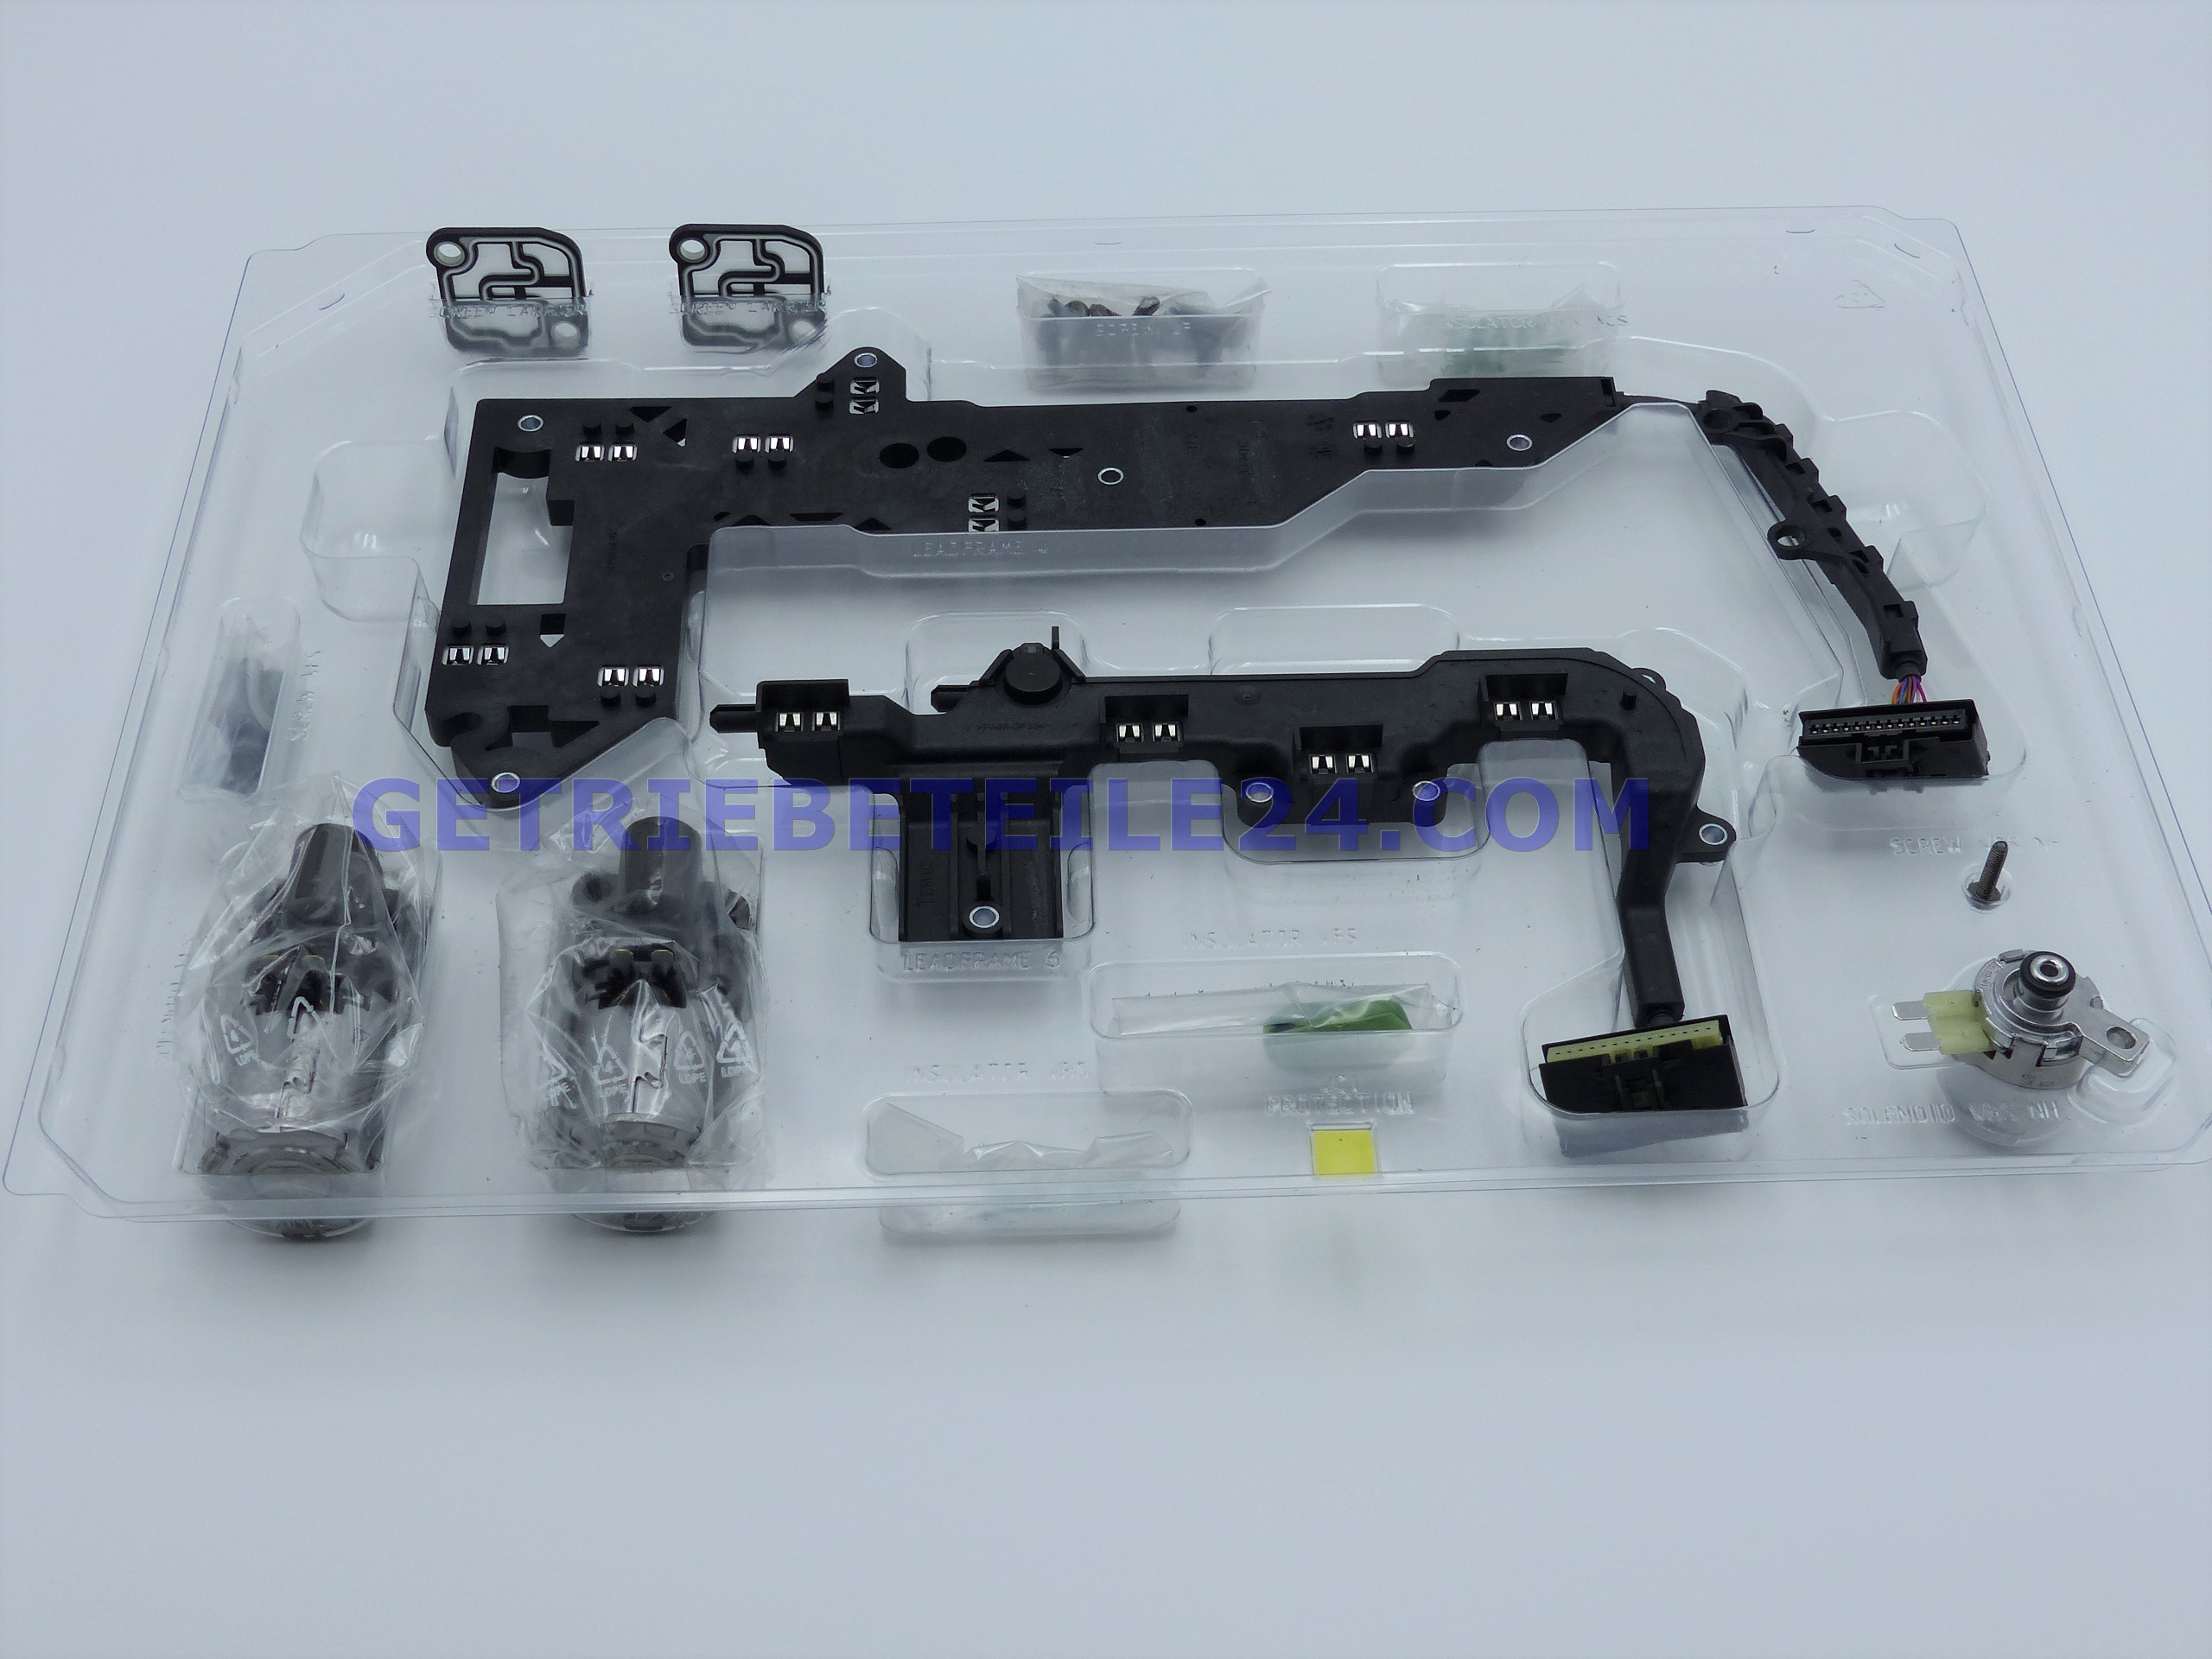 Wandler + Getriebeteile vom Profi - Reparatursatz Mechatronik Audi DSG- Getriebe DL501